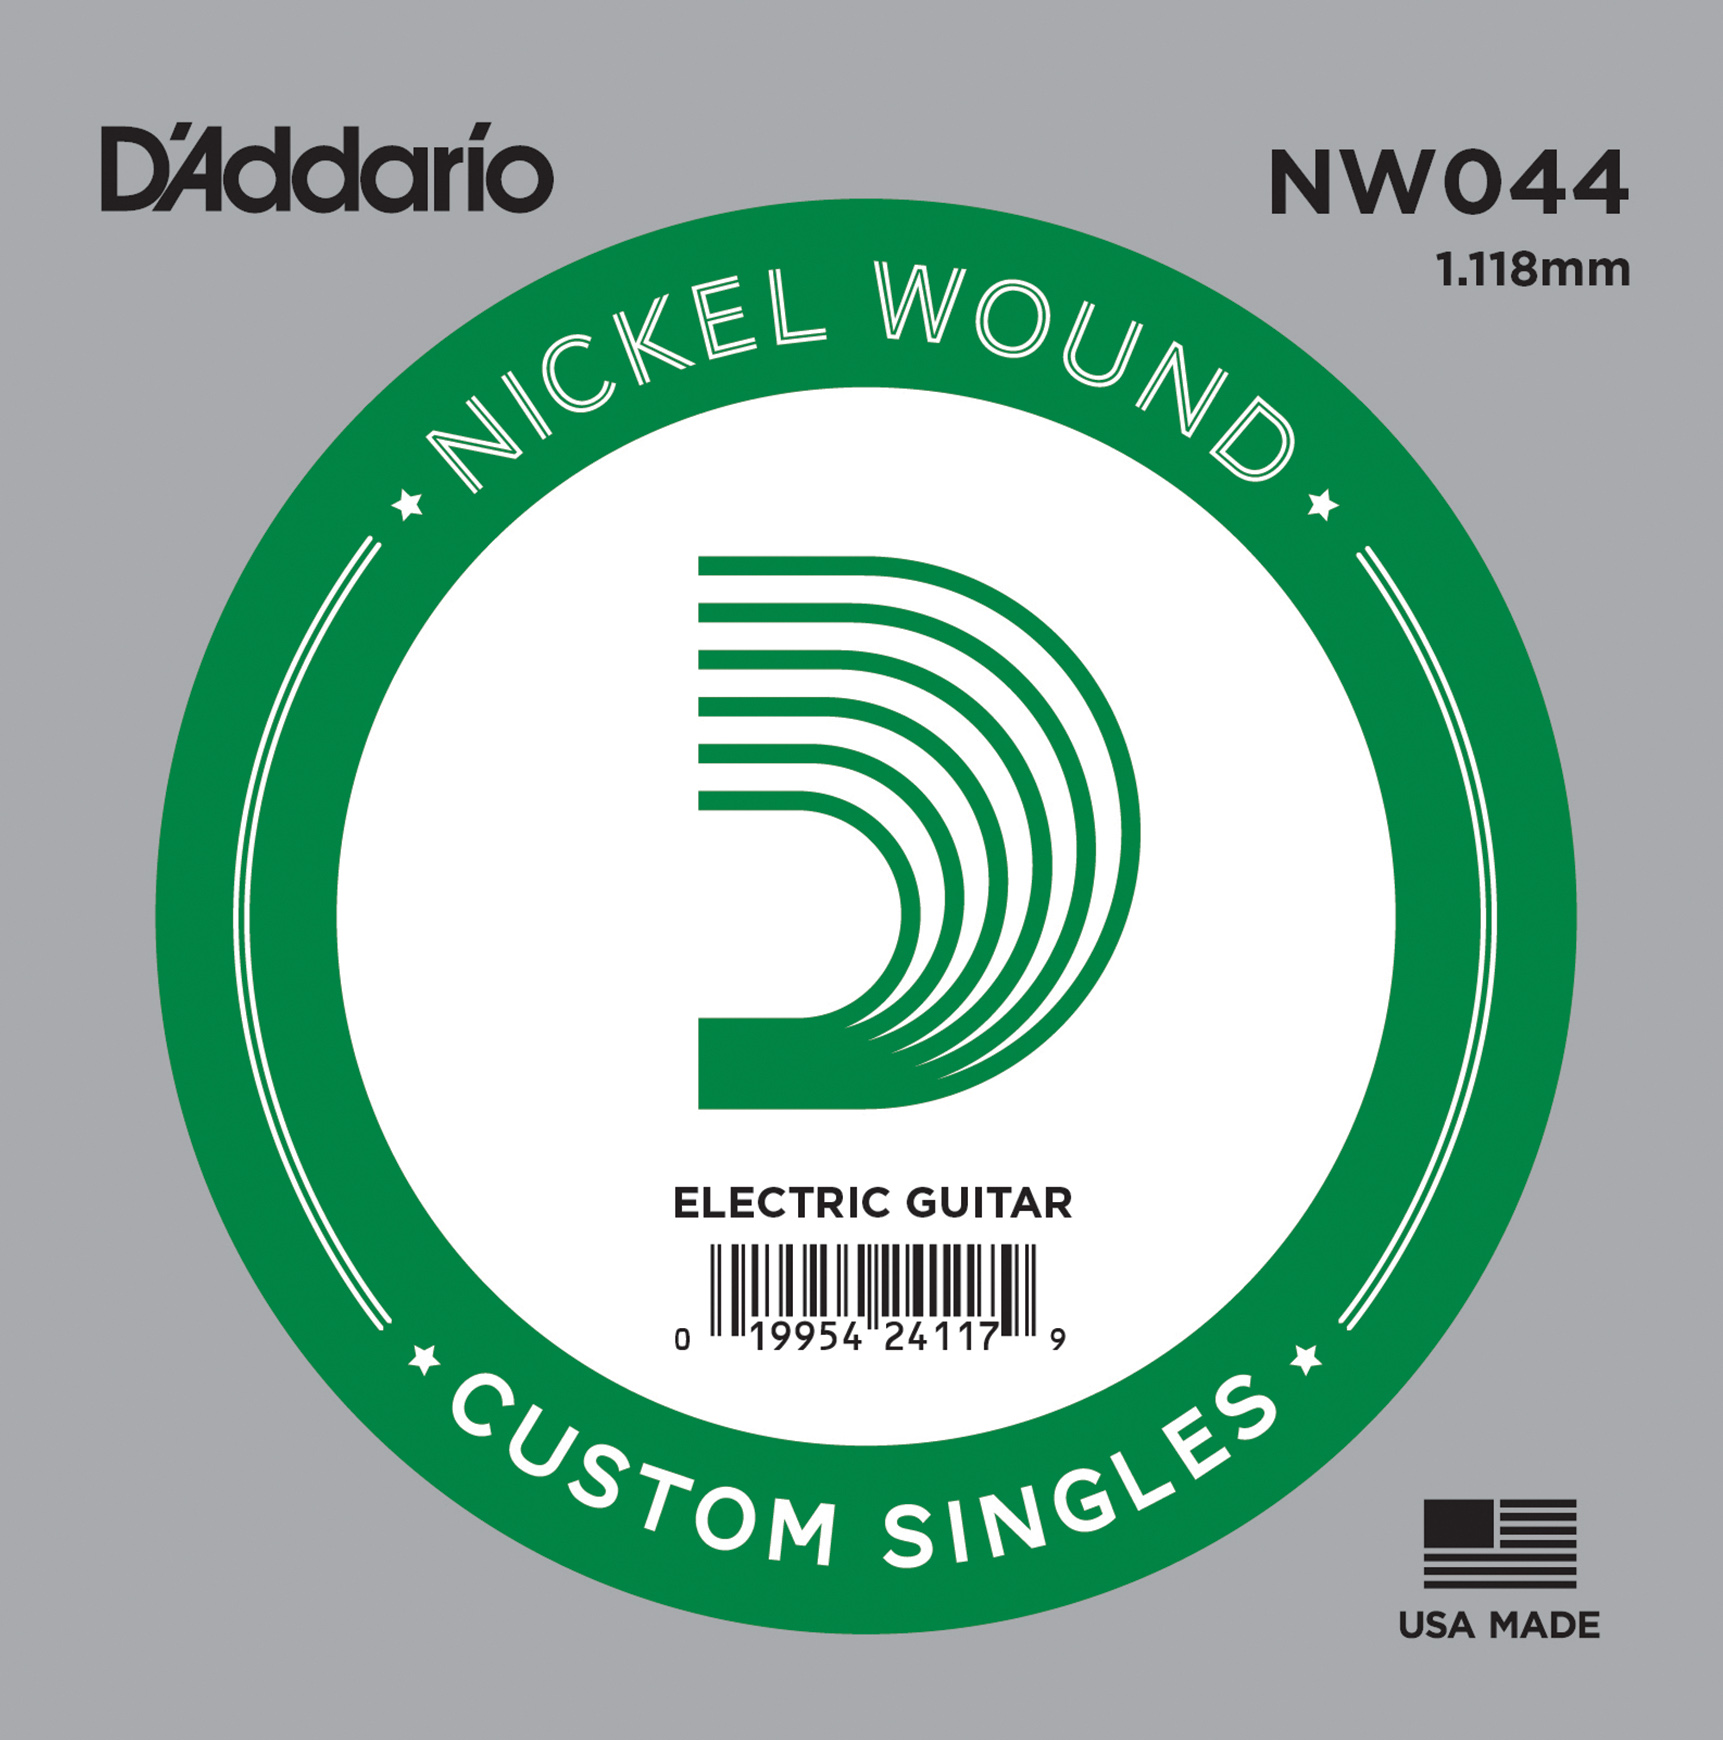 NW044 Nickel Round Wound 44